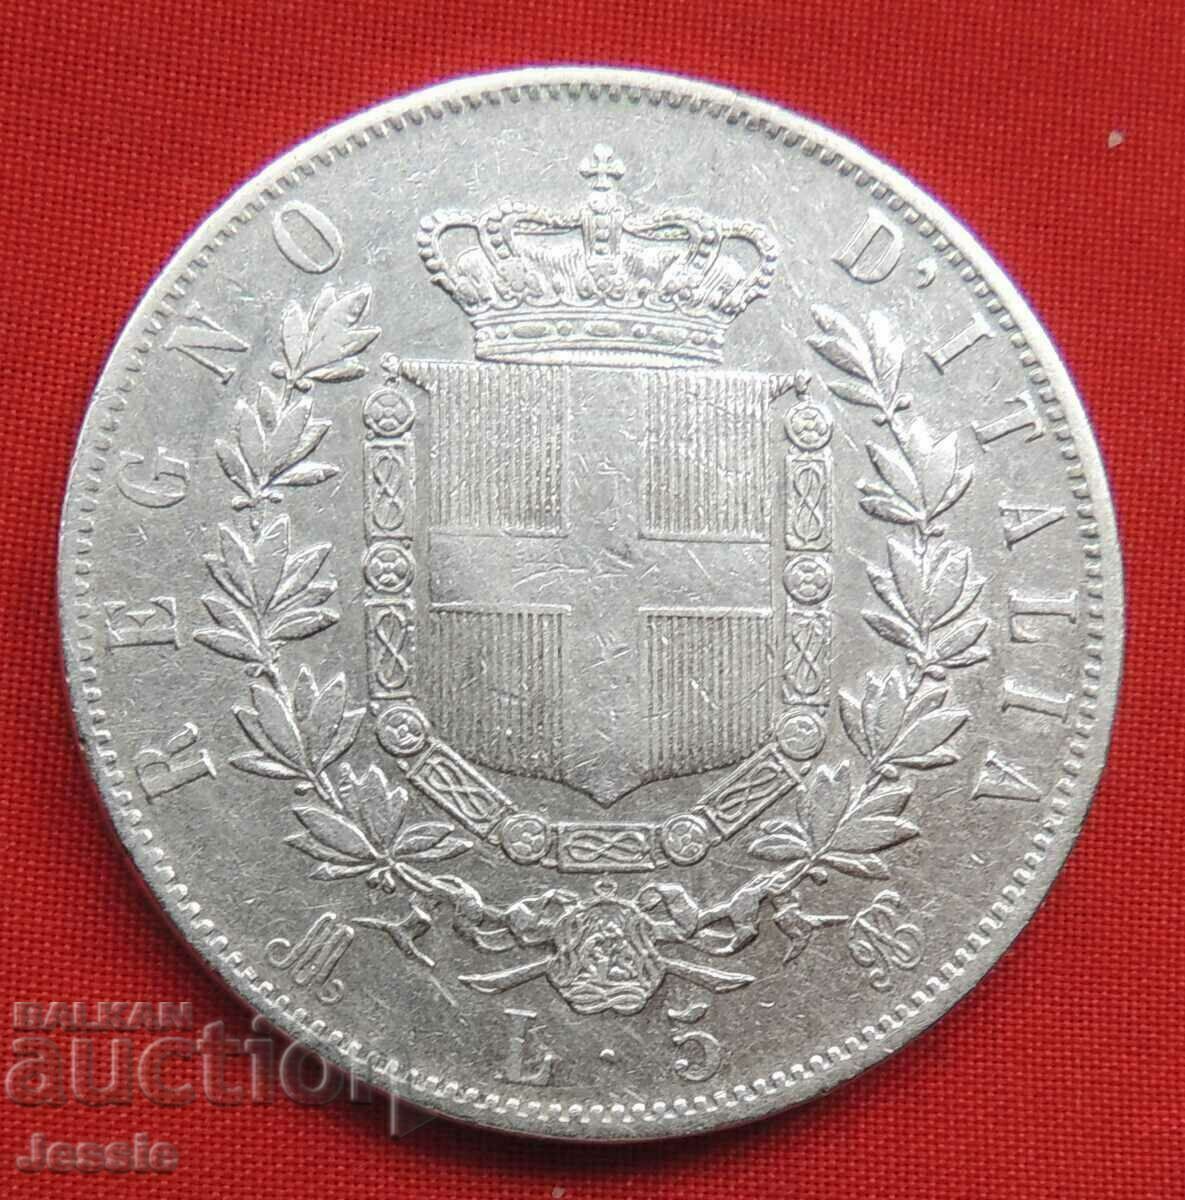 5 Лири 1873 M Италия сребро NO MADE IN CHINA